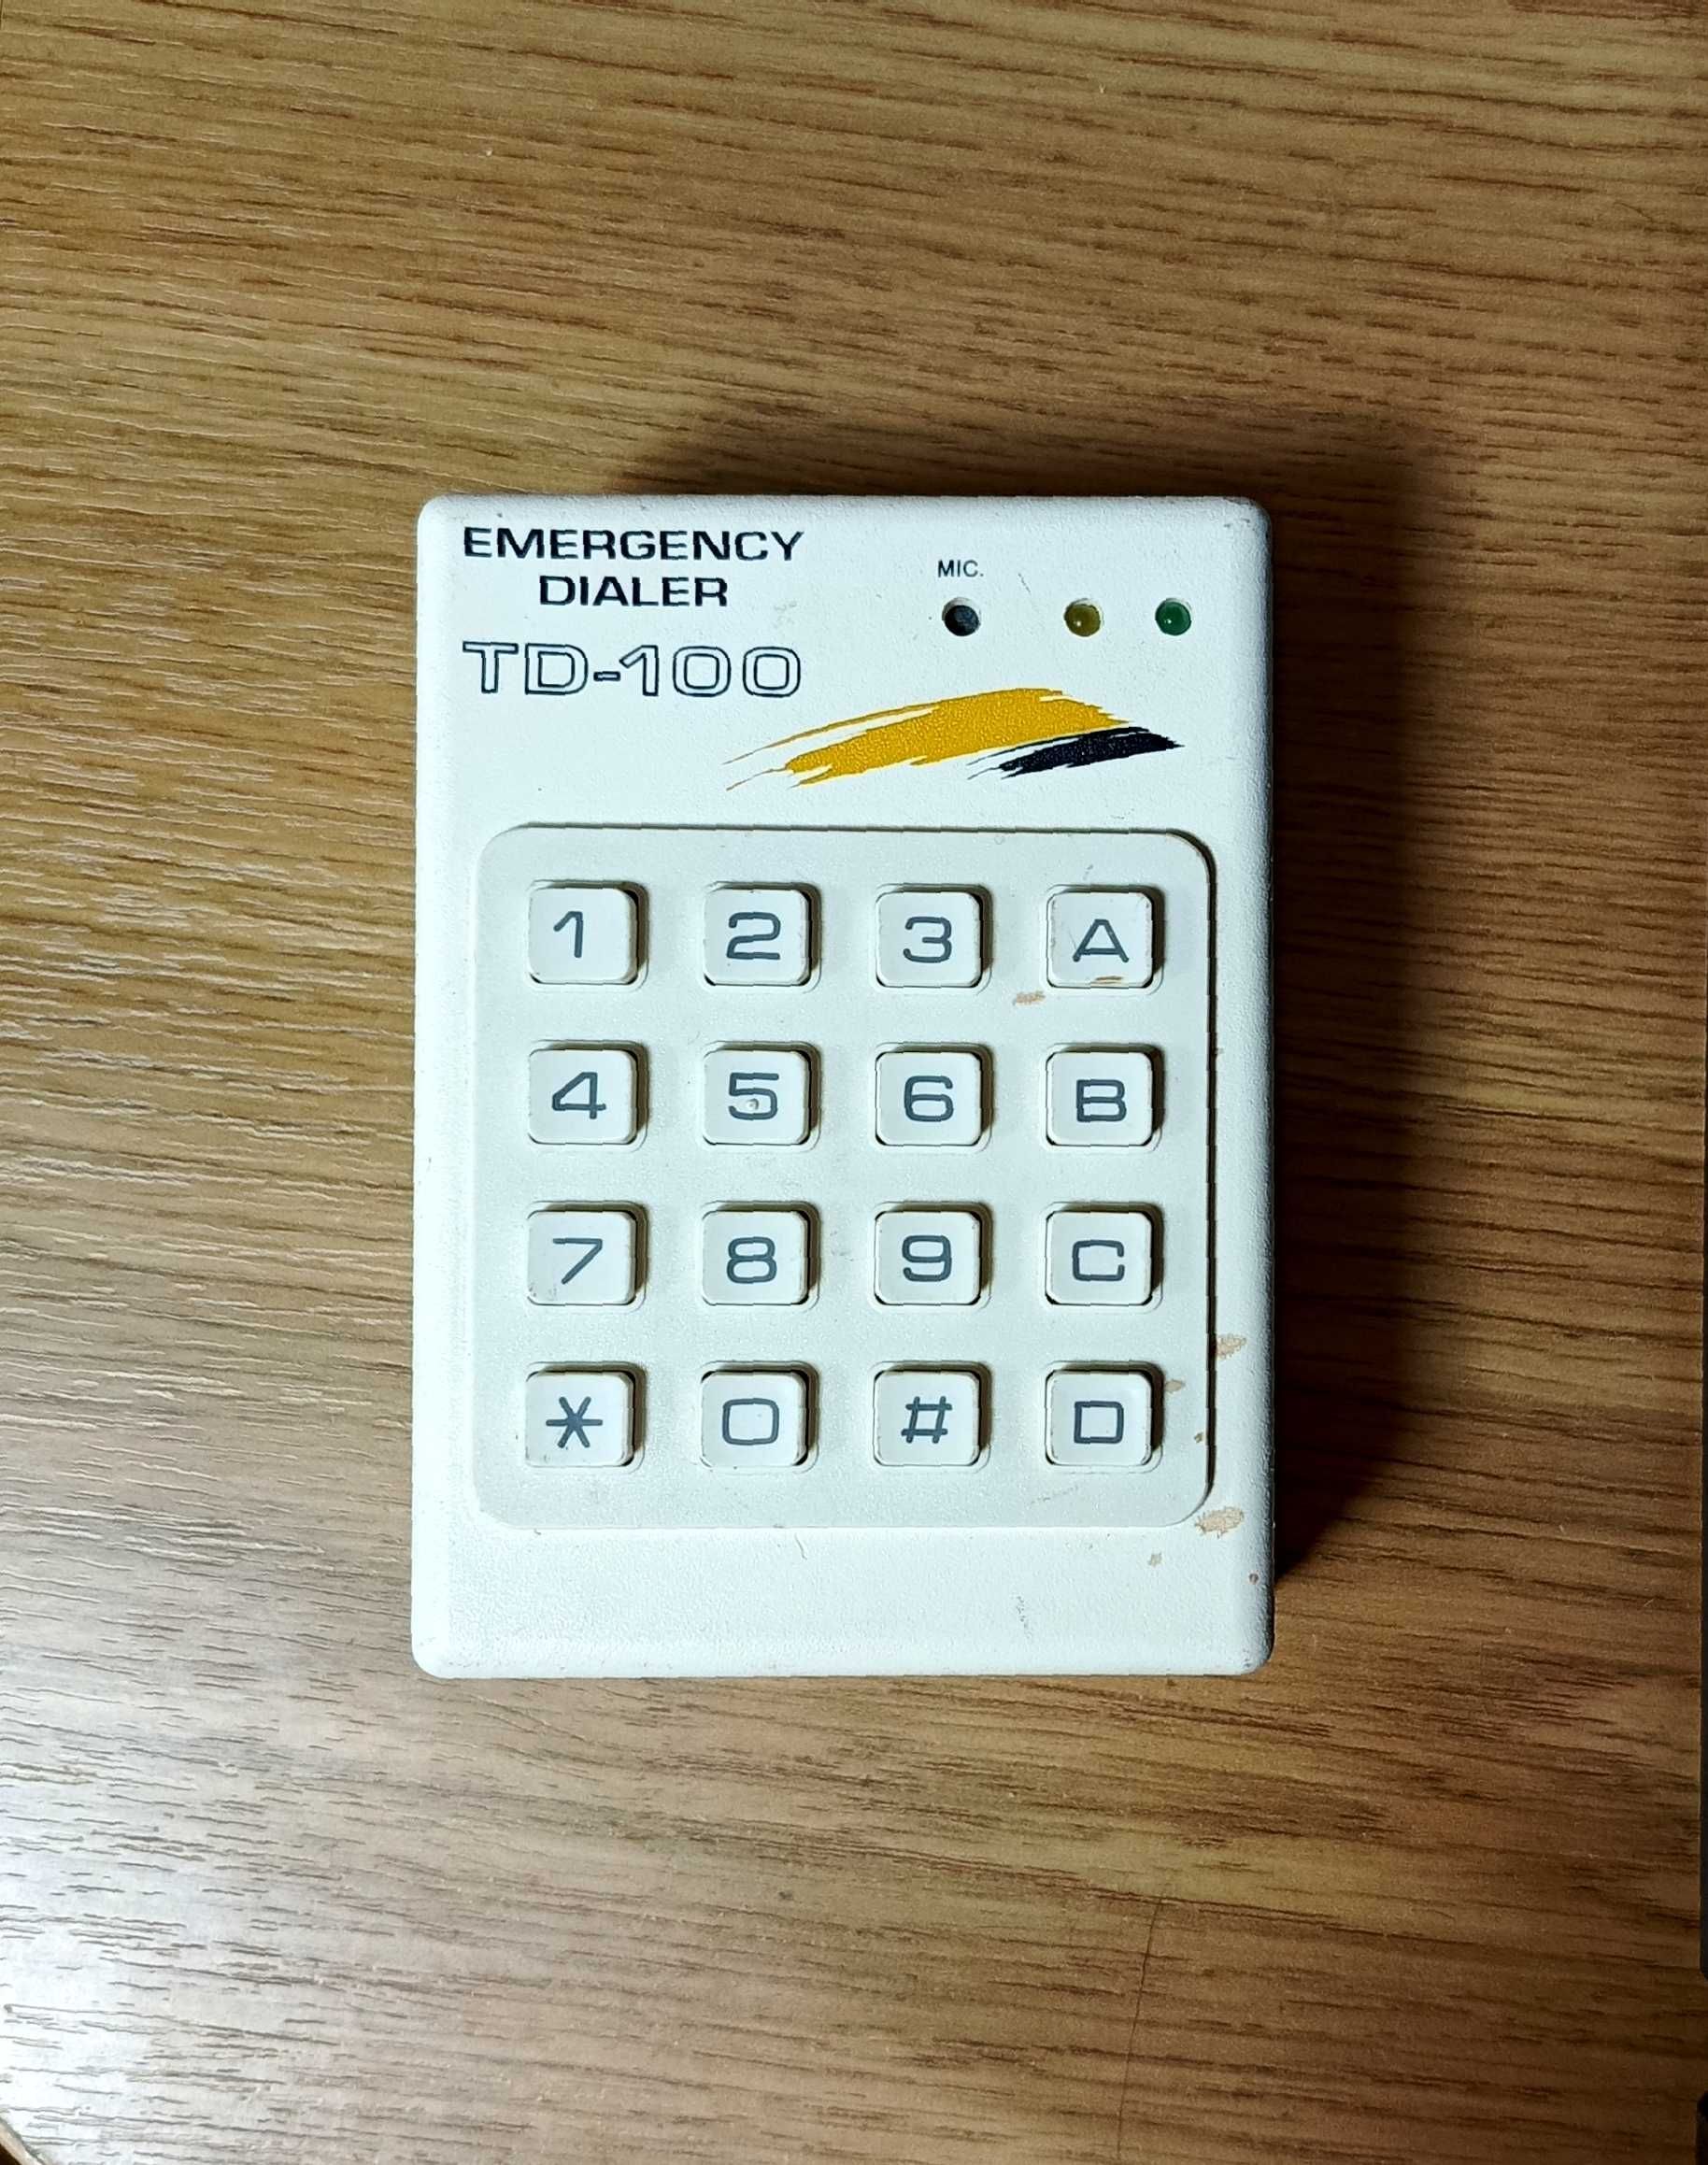 Прибор дозвонщик для сигнализации телефонный диалер Jablotron TD-110.